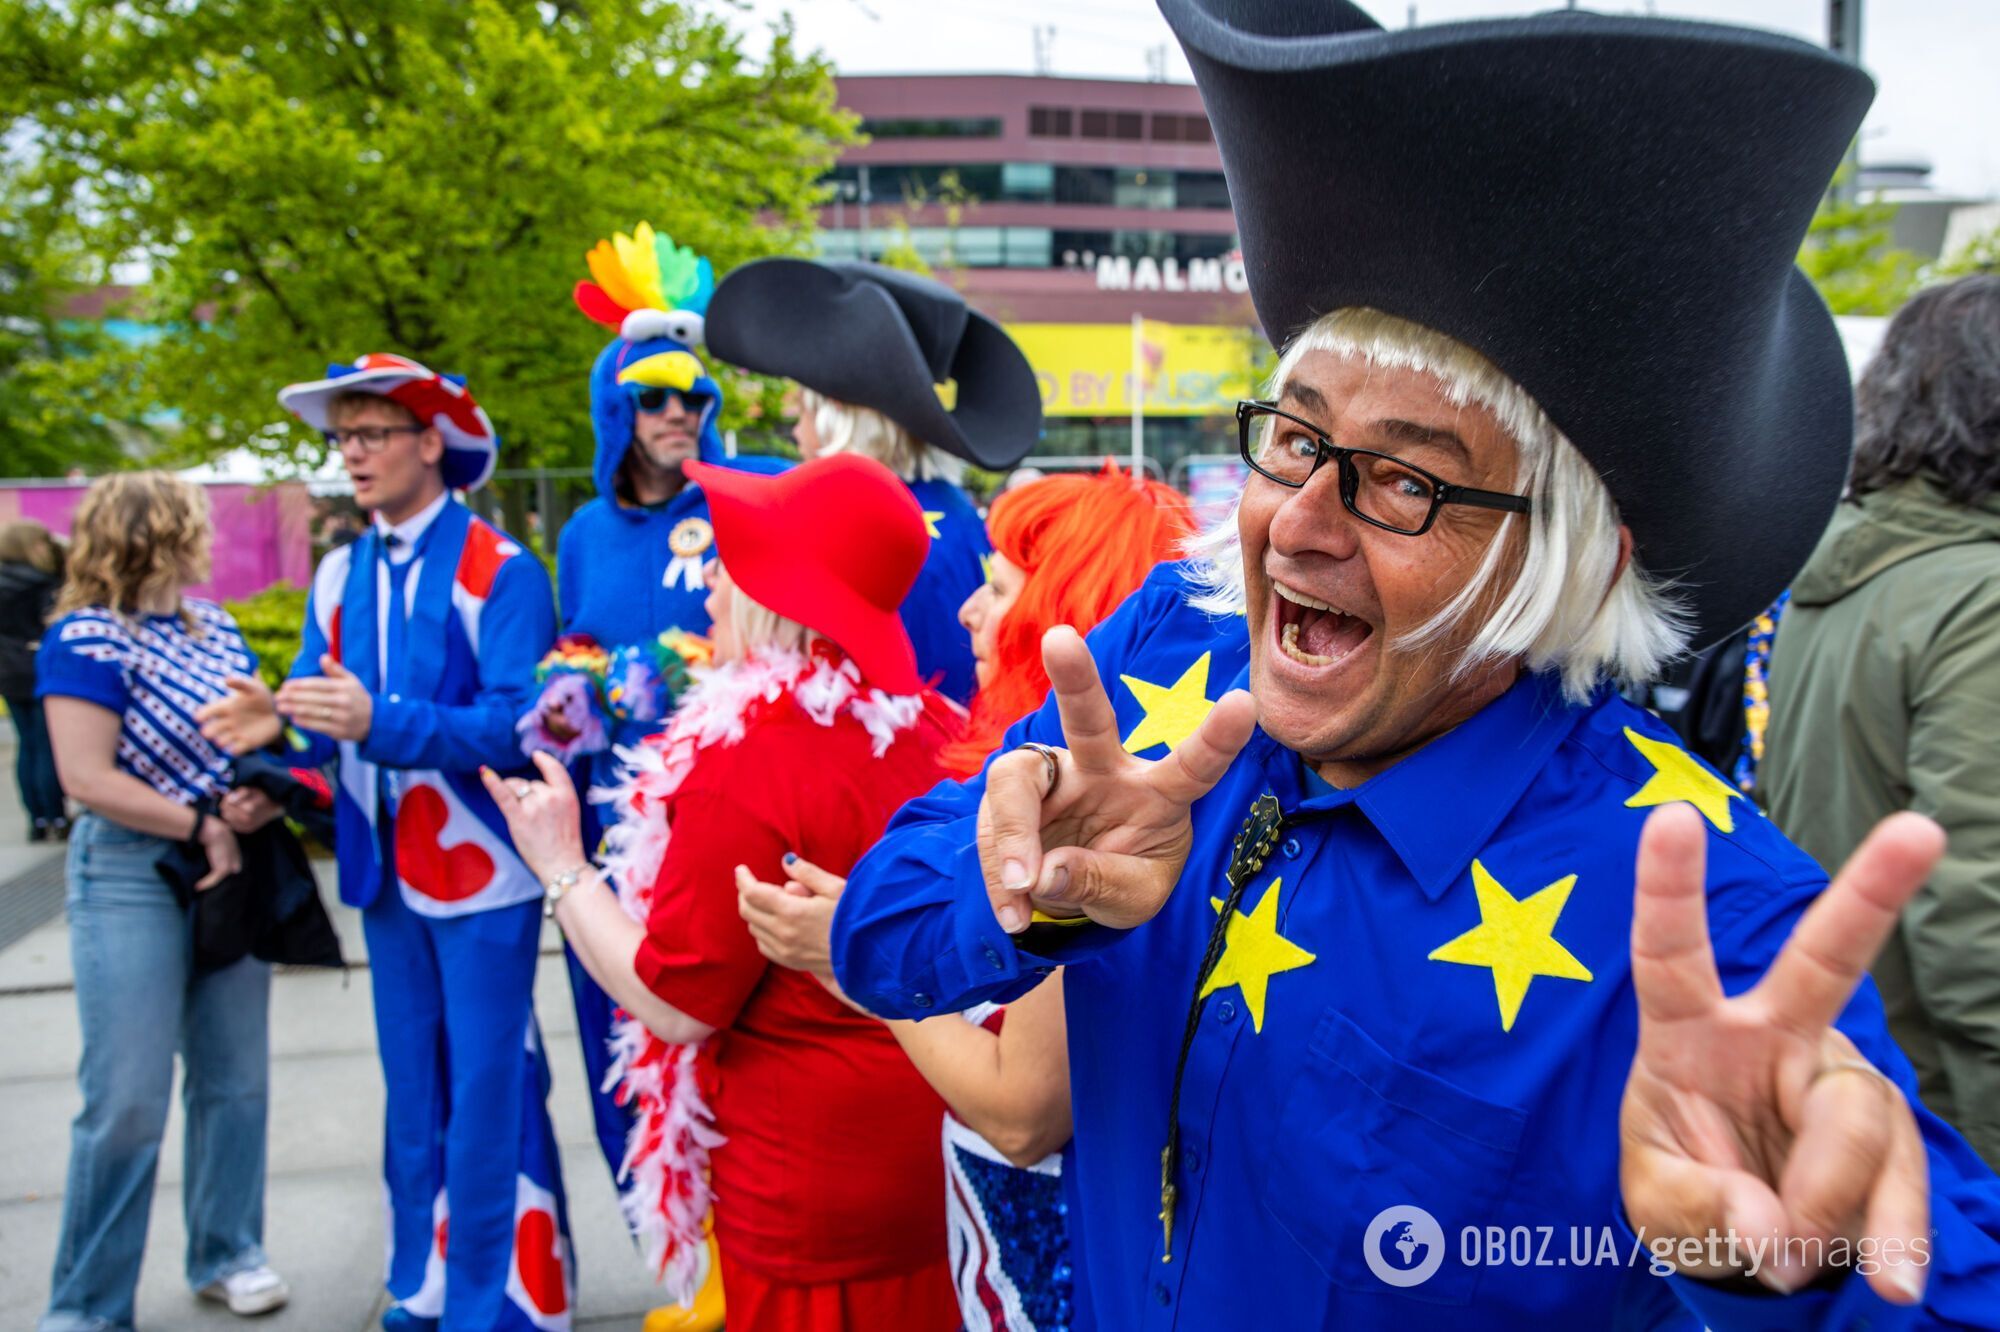 Joost Klein з Нідерландів хітом Europapa довів фанатів Євробачення 2024 до божевілля: публіка не могла стримати емоцій. Відео